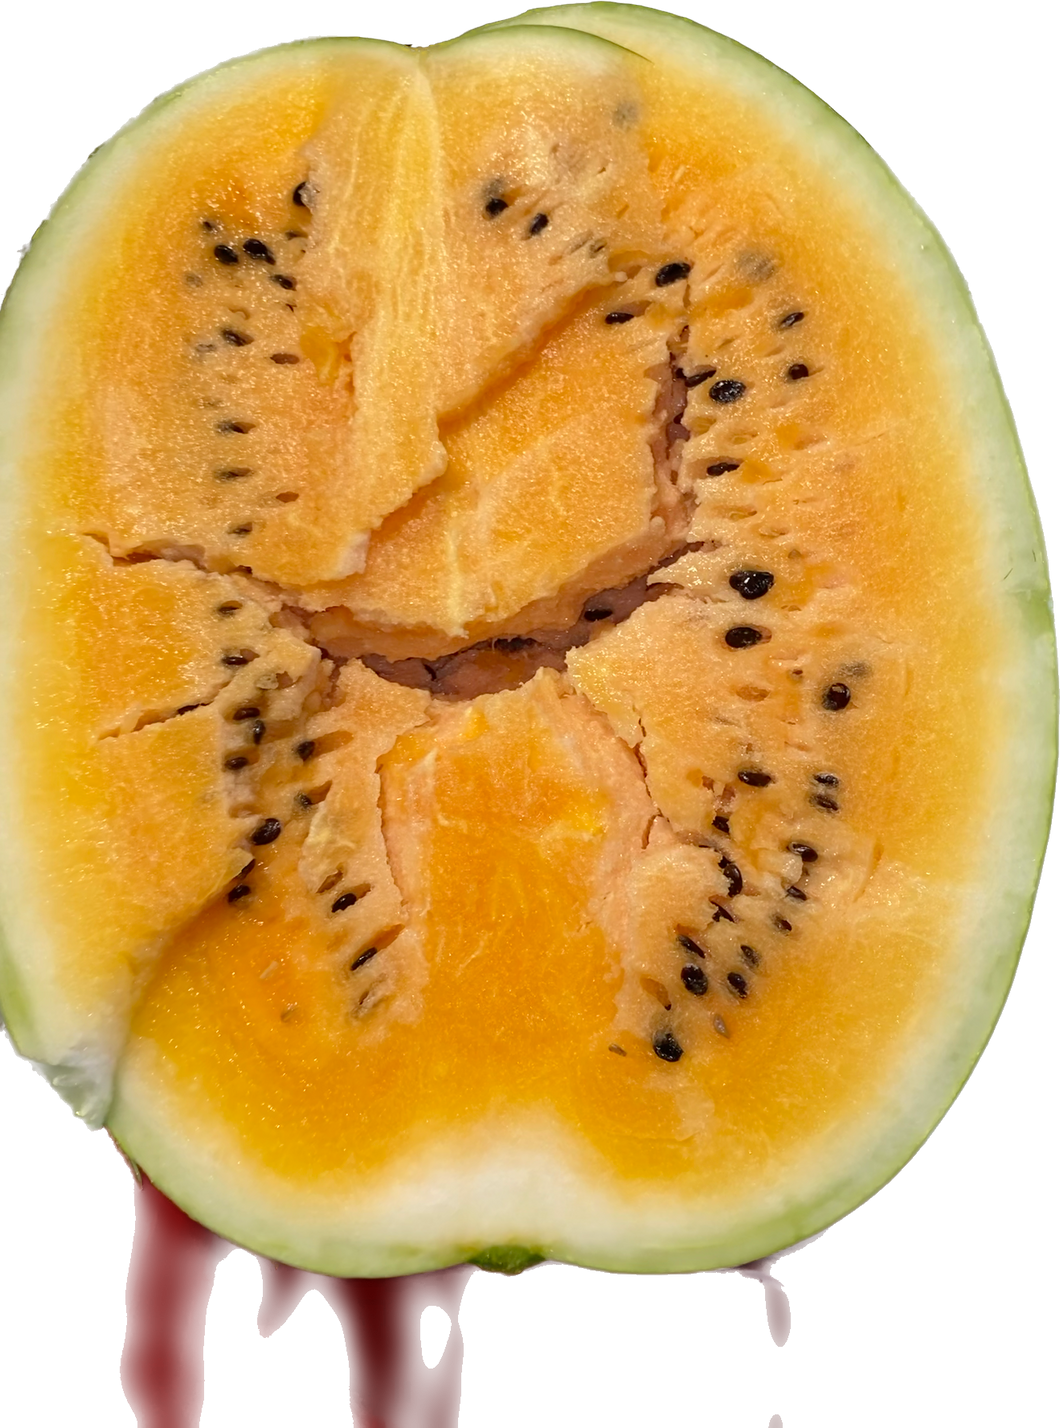 Orange Watermelon Seeds